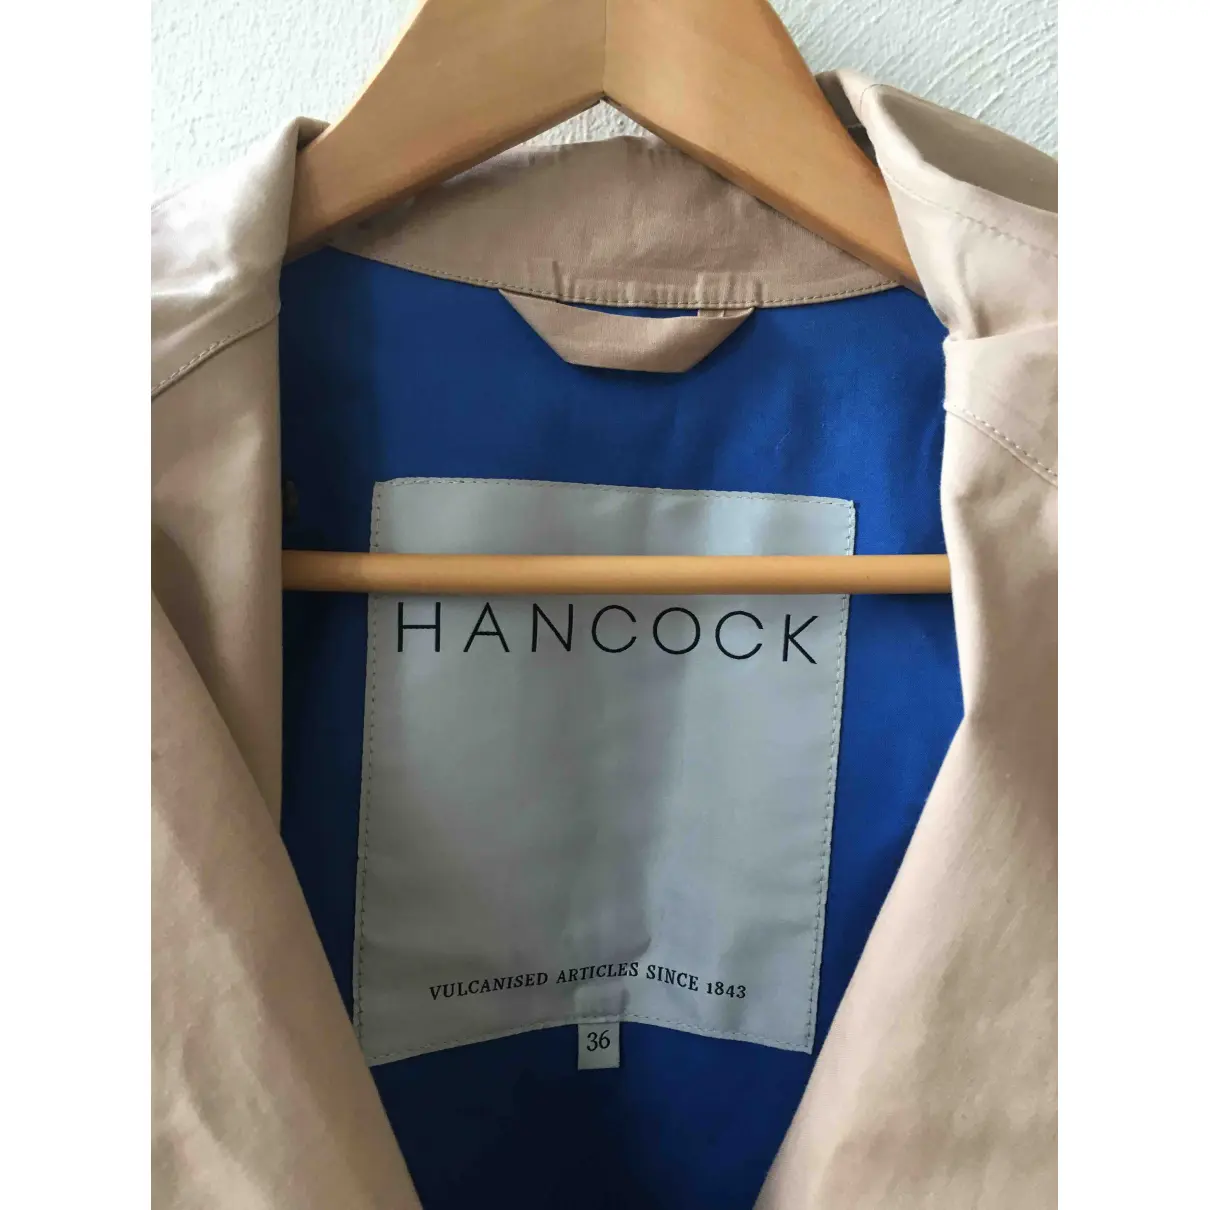 Trench coat Hancock